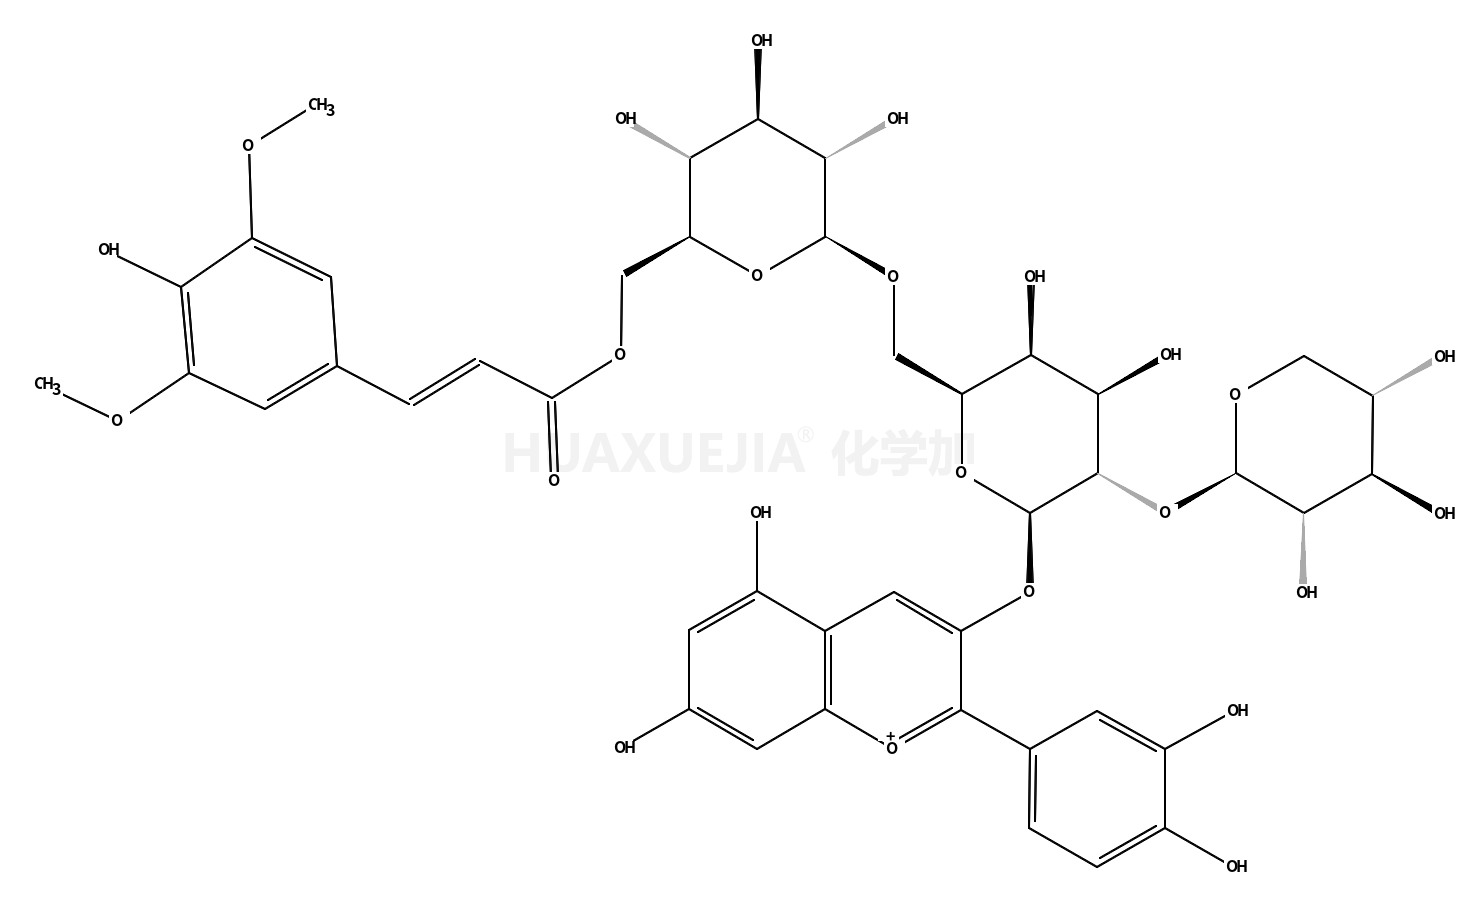 矢车菊素-3-O-木糖(芥子酰葡萄糖)半乳糖苷氯化物